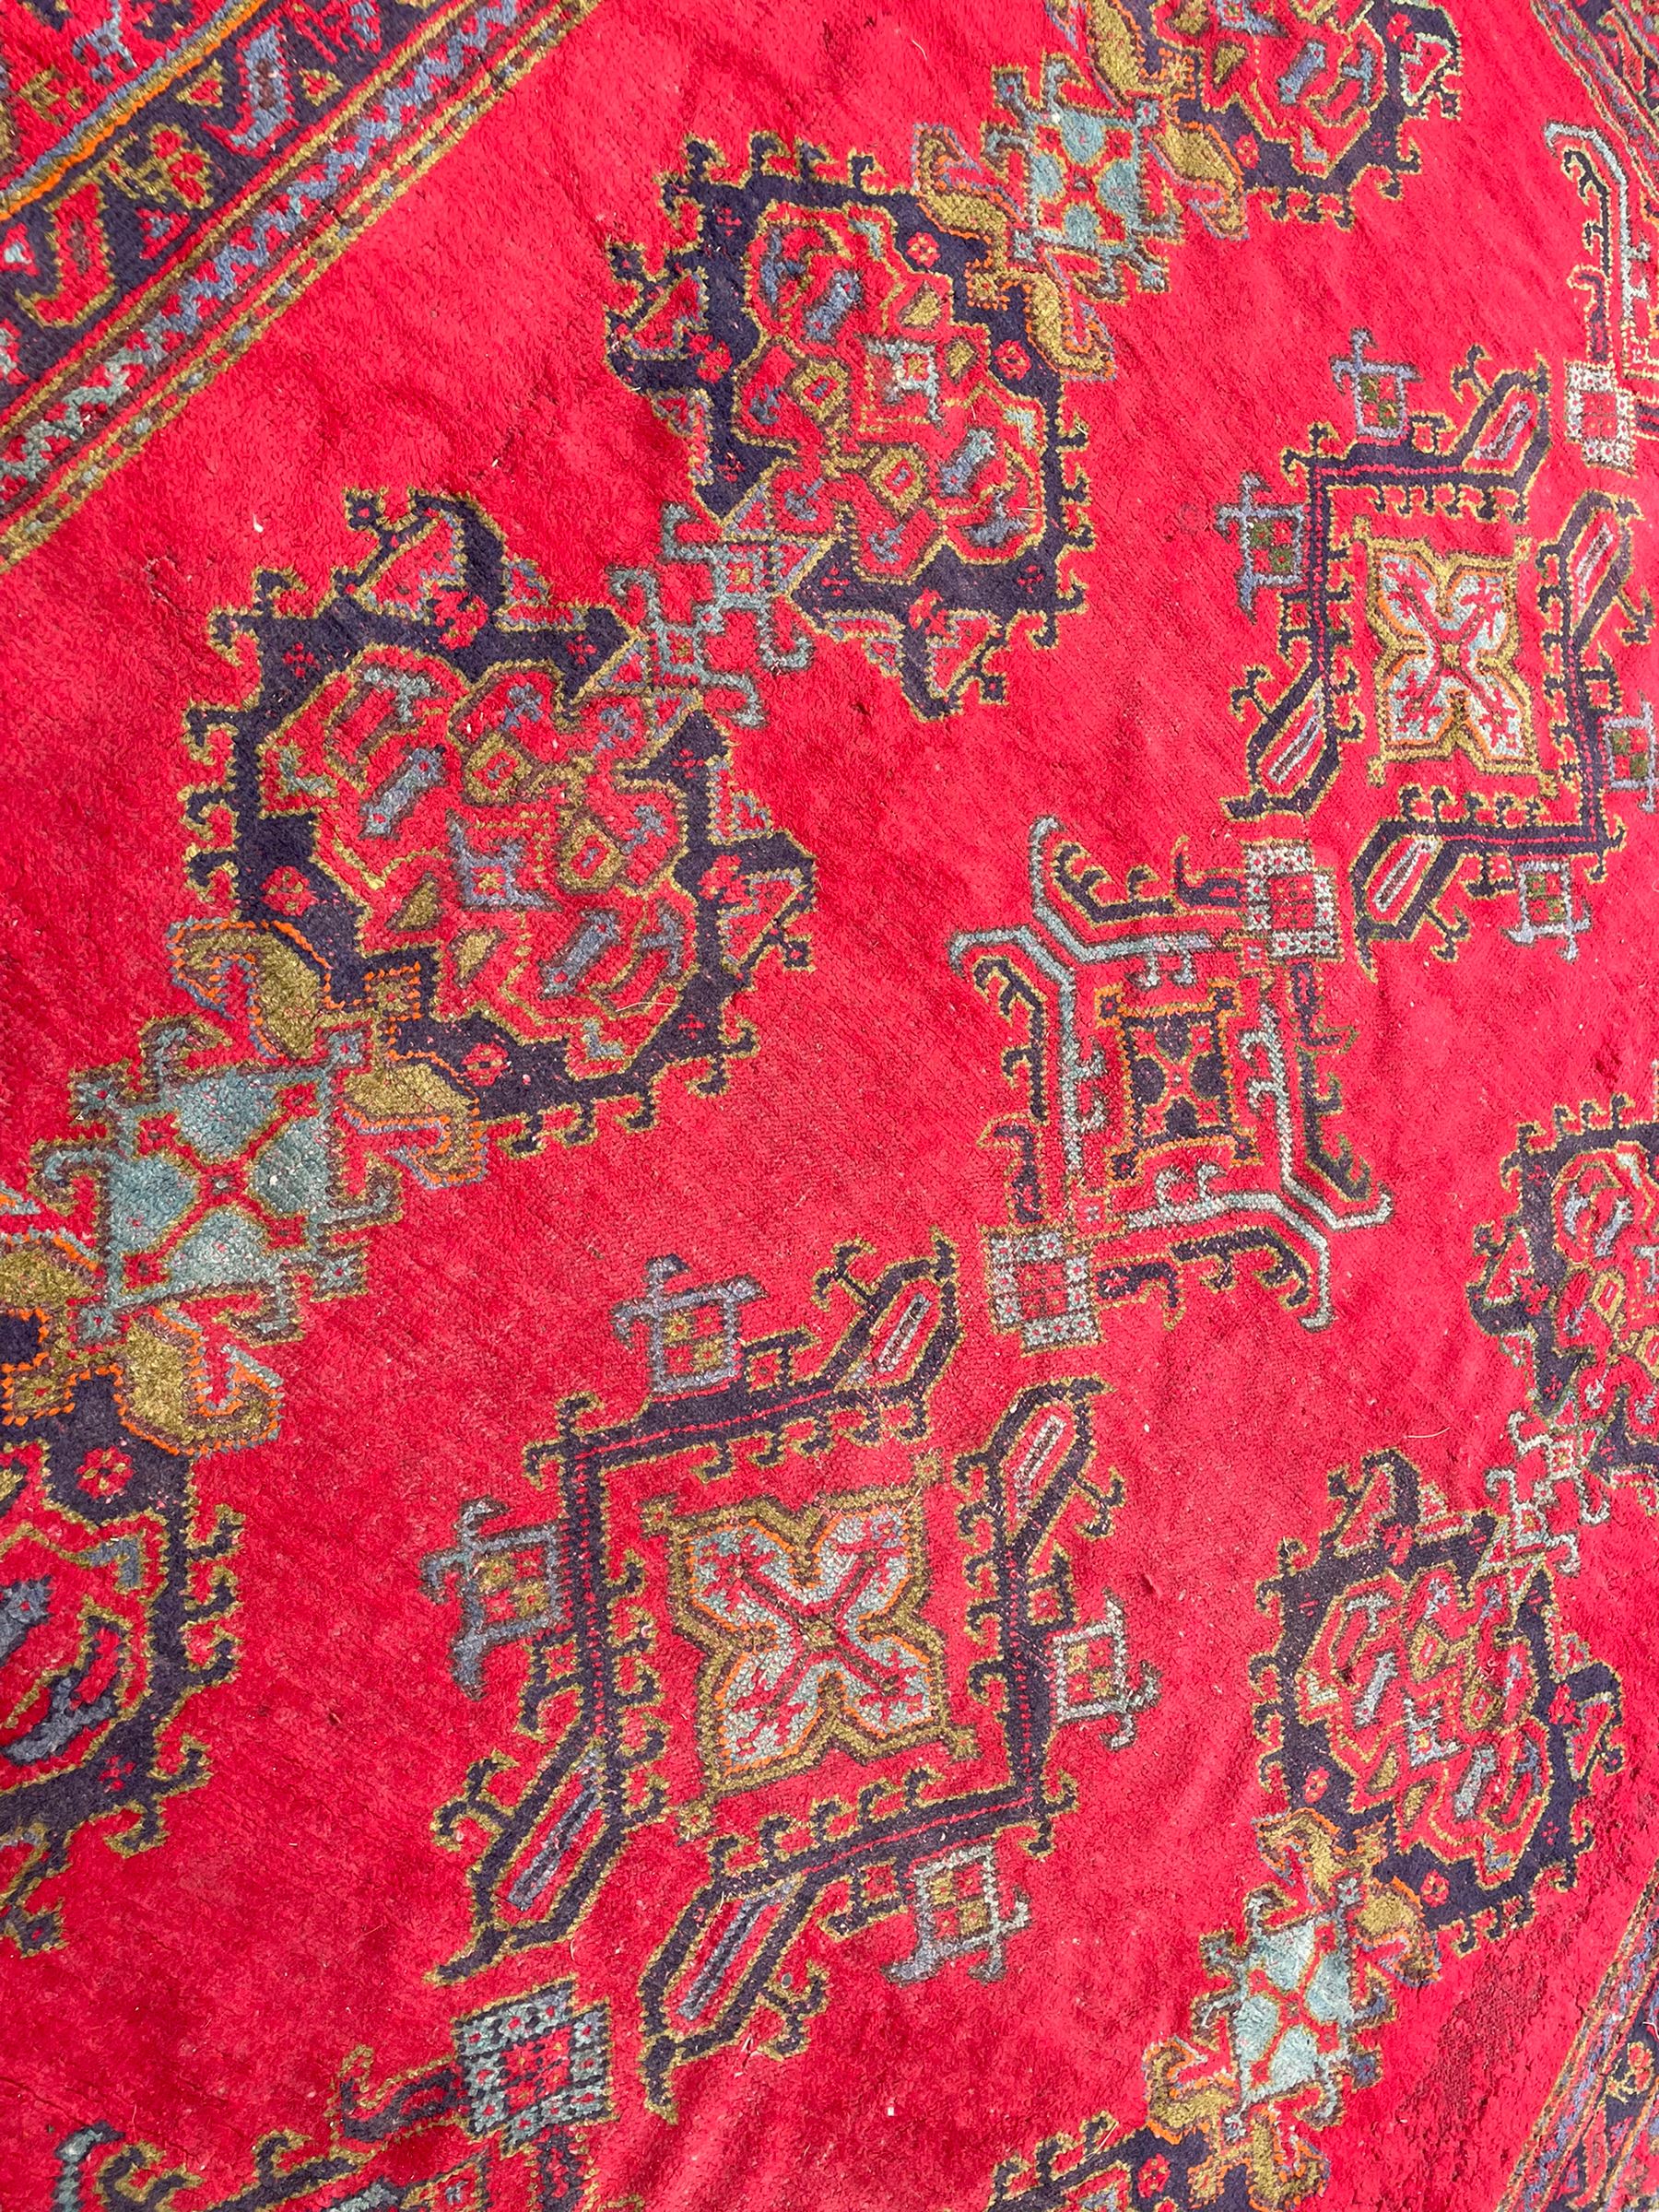 Early 20th century Western Anatolia Turkish Oushak crimson ground carpet - Image 10 of 10